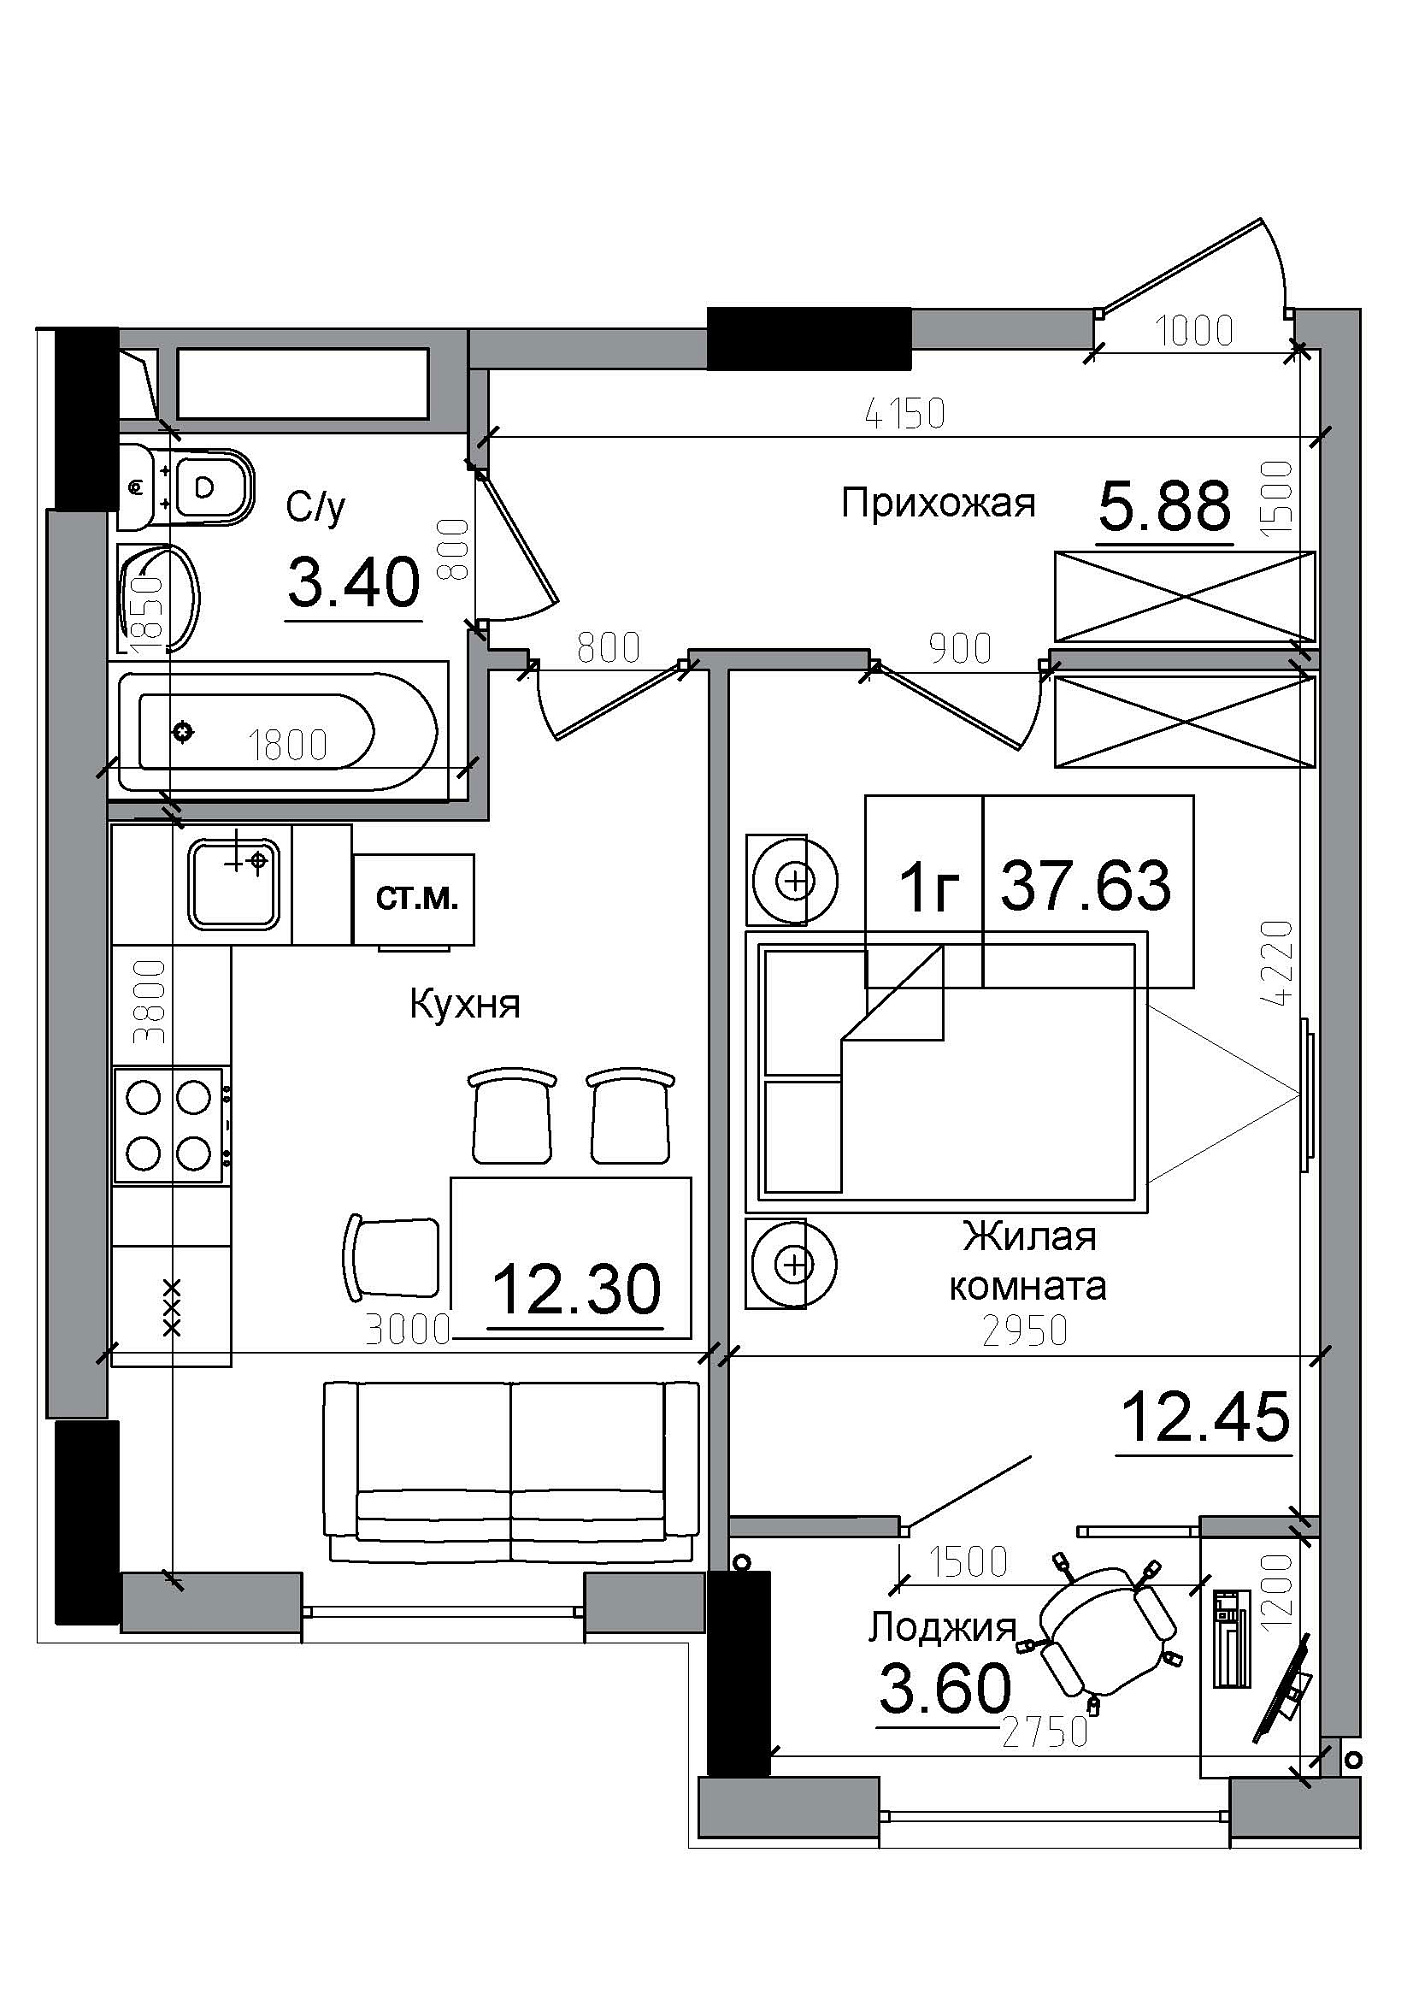 Планировка 1-к квартира площей 37.63м2, AB-12-06/00004.